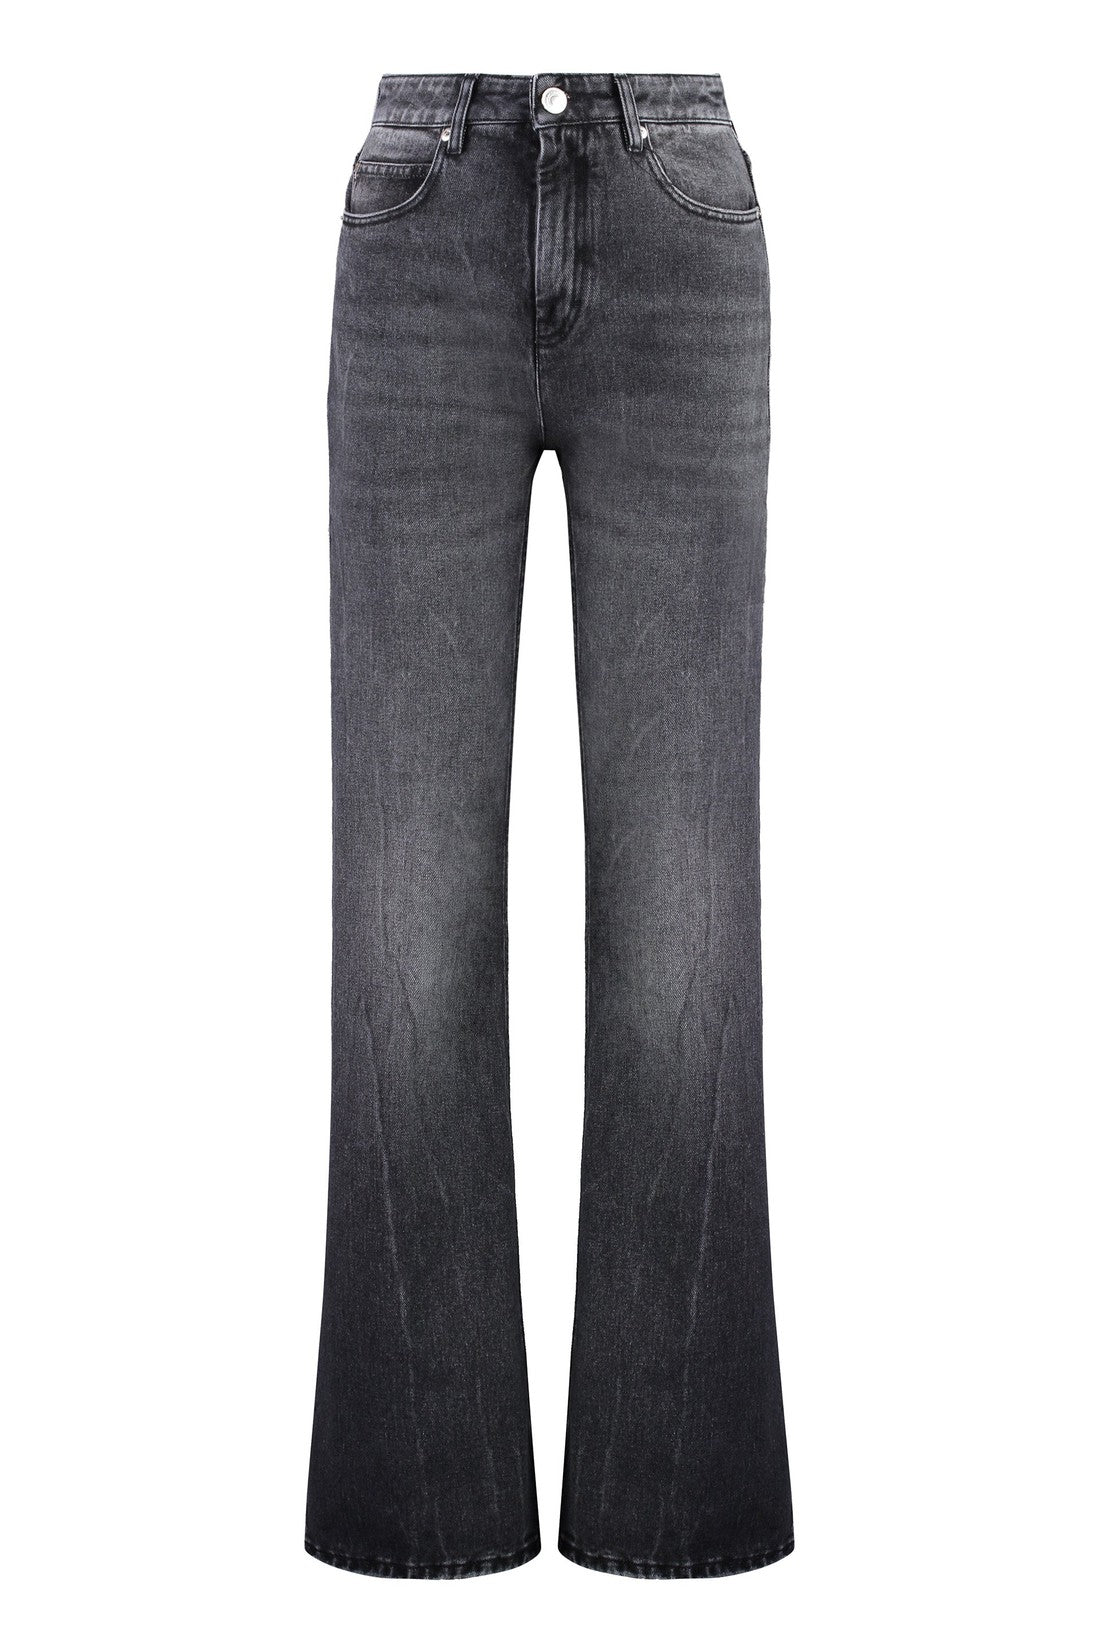 AMI PARIS-OUTLET-SALE-High-rise flared jeans-ARCHIVIST